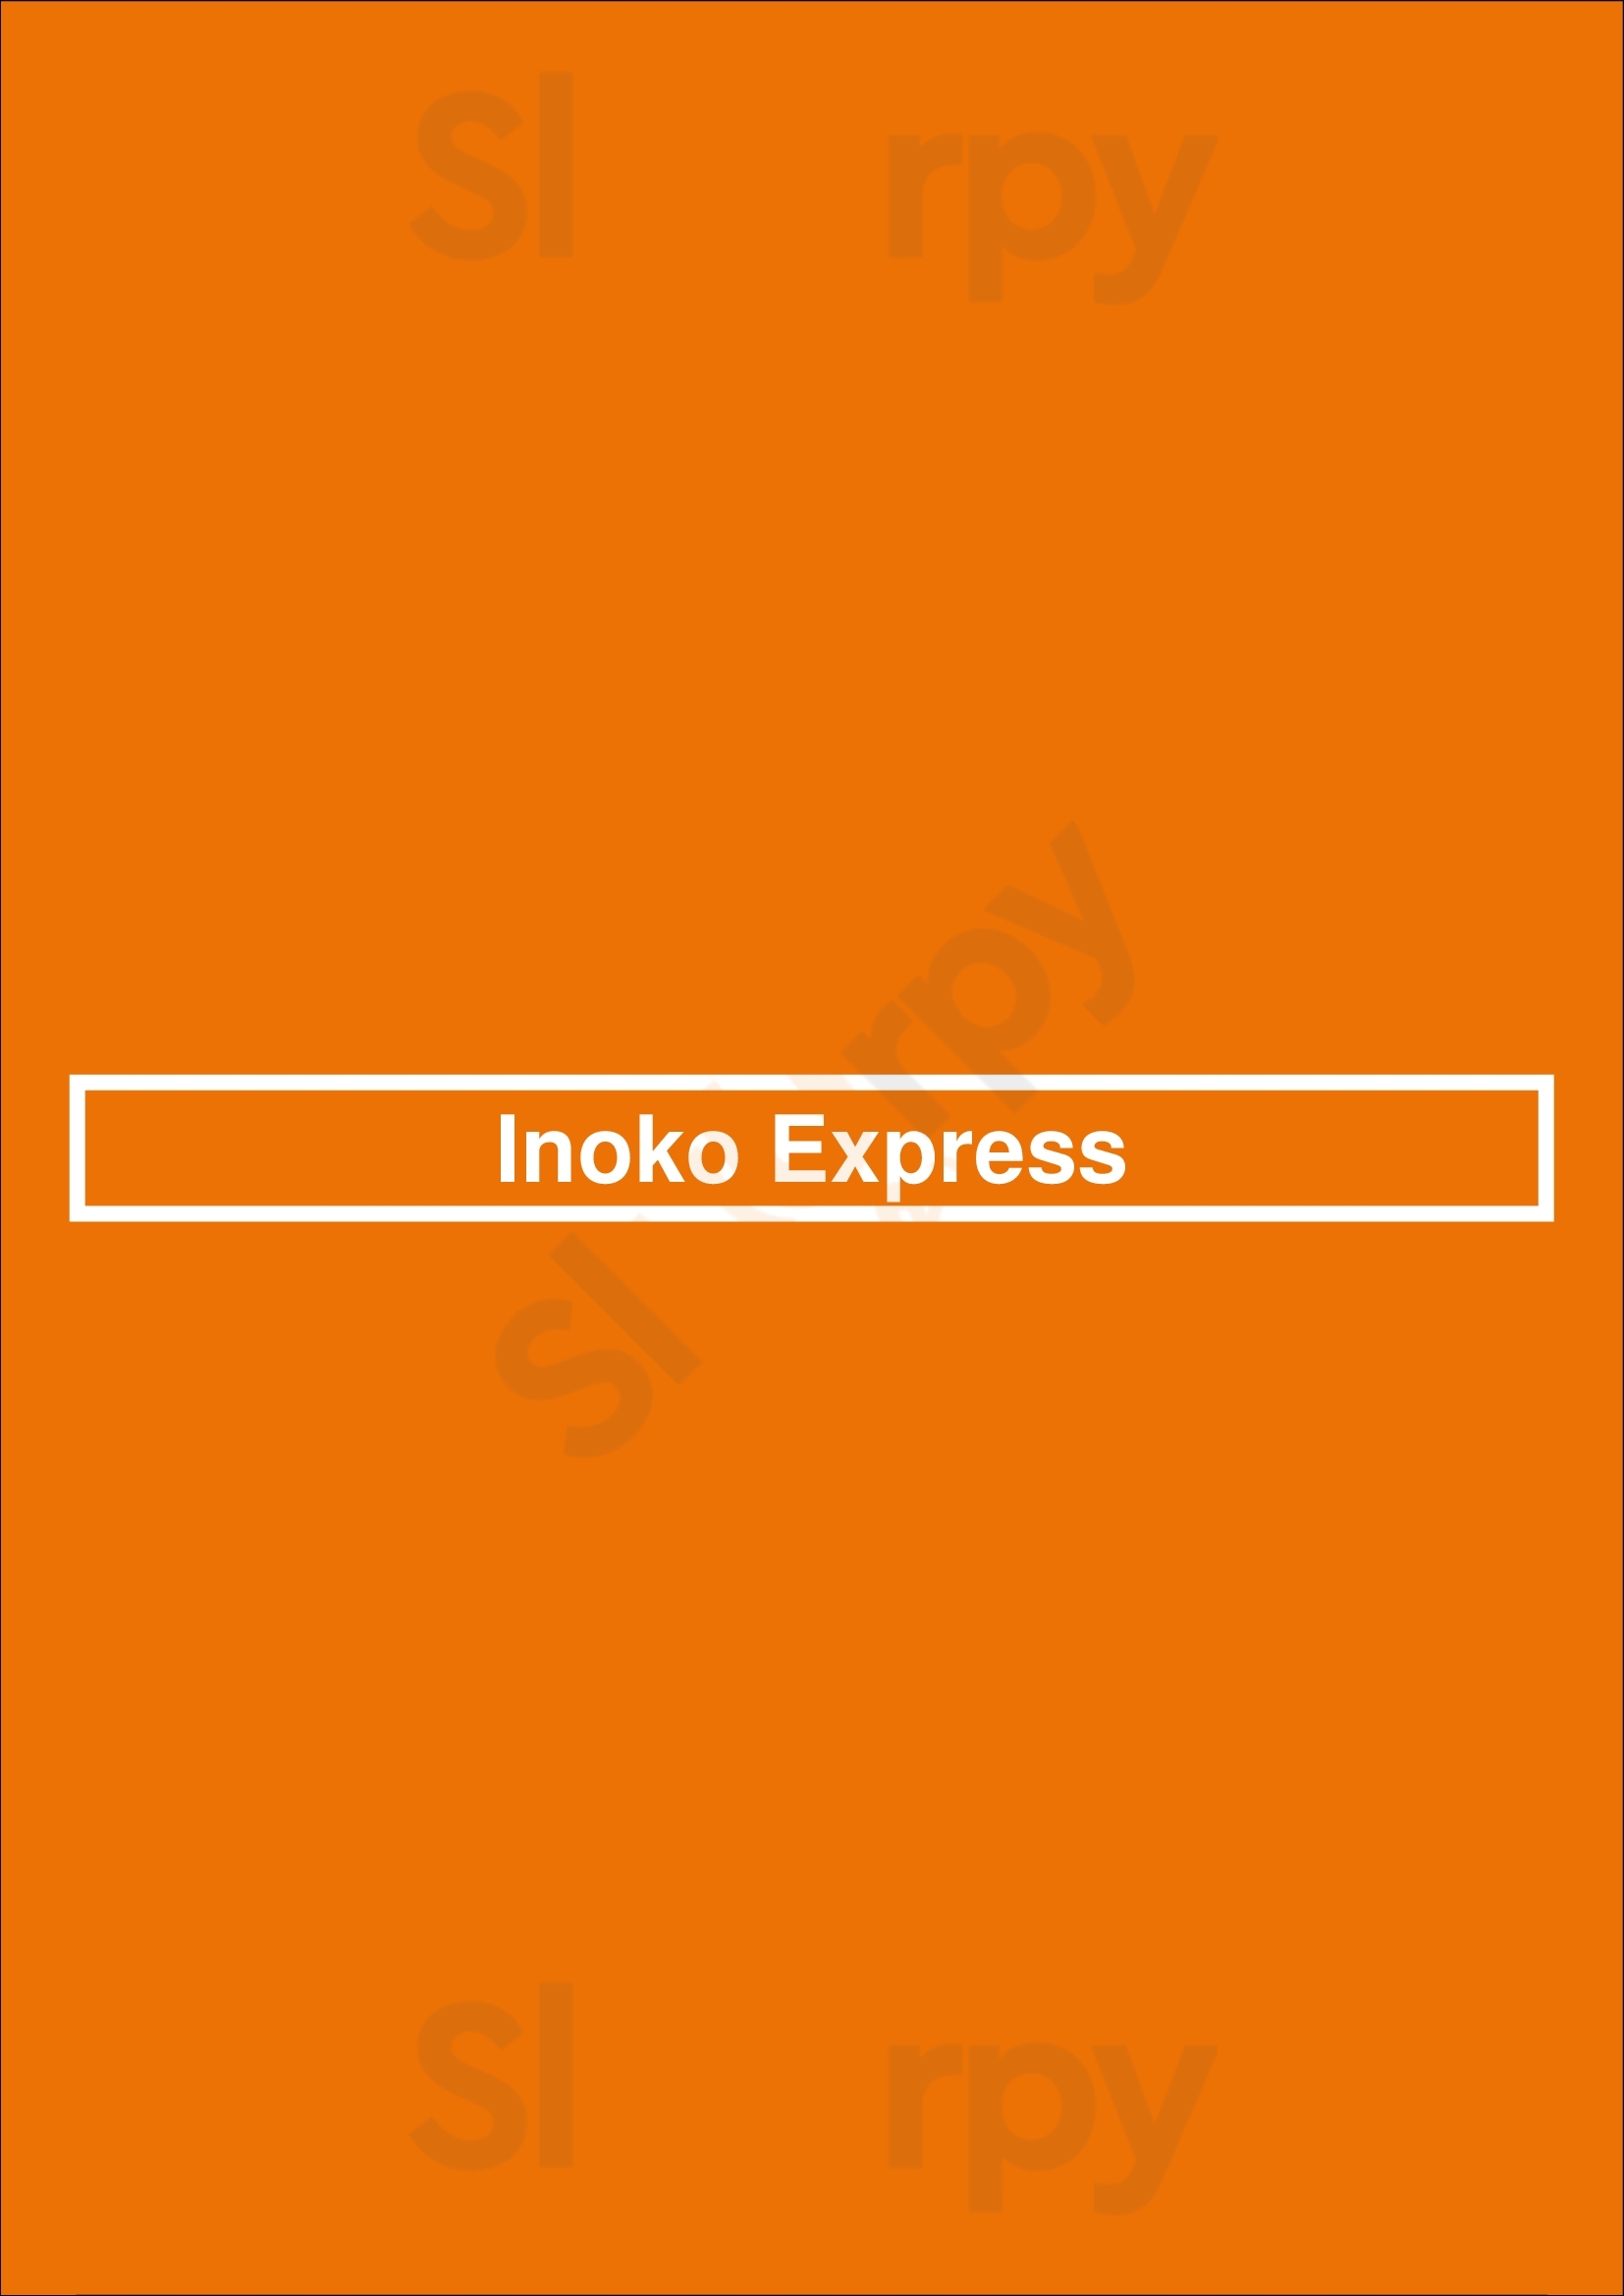 Inoko Express Athens Menu - 1